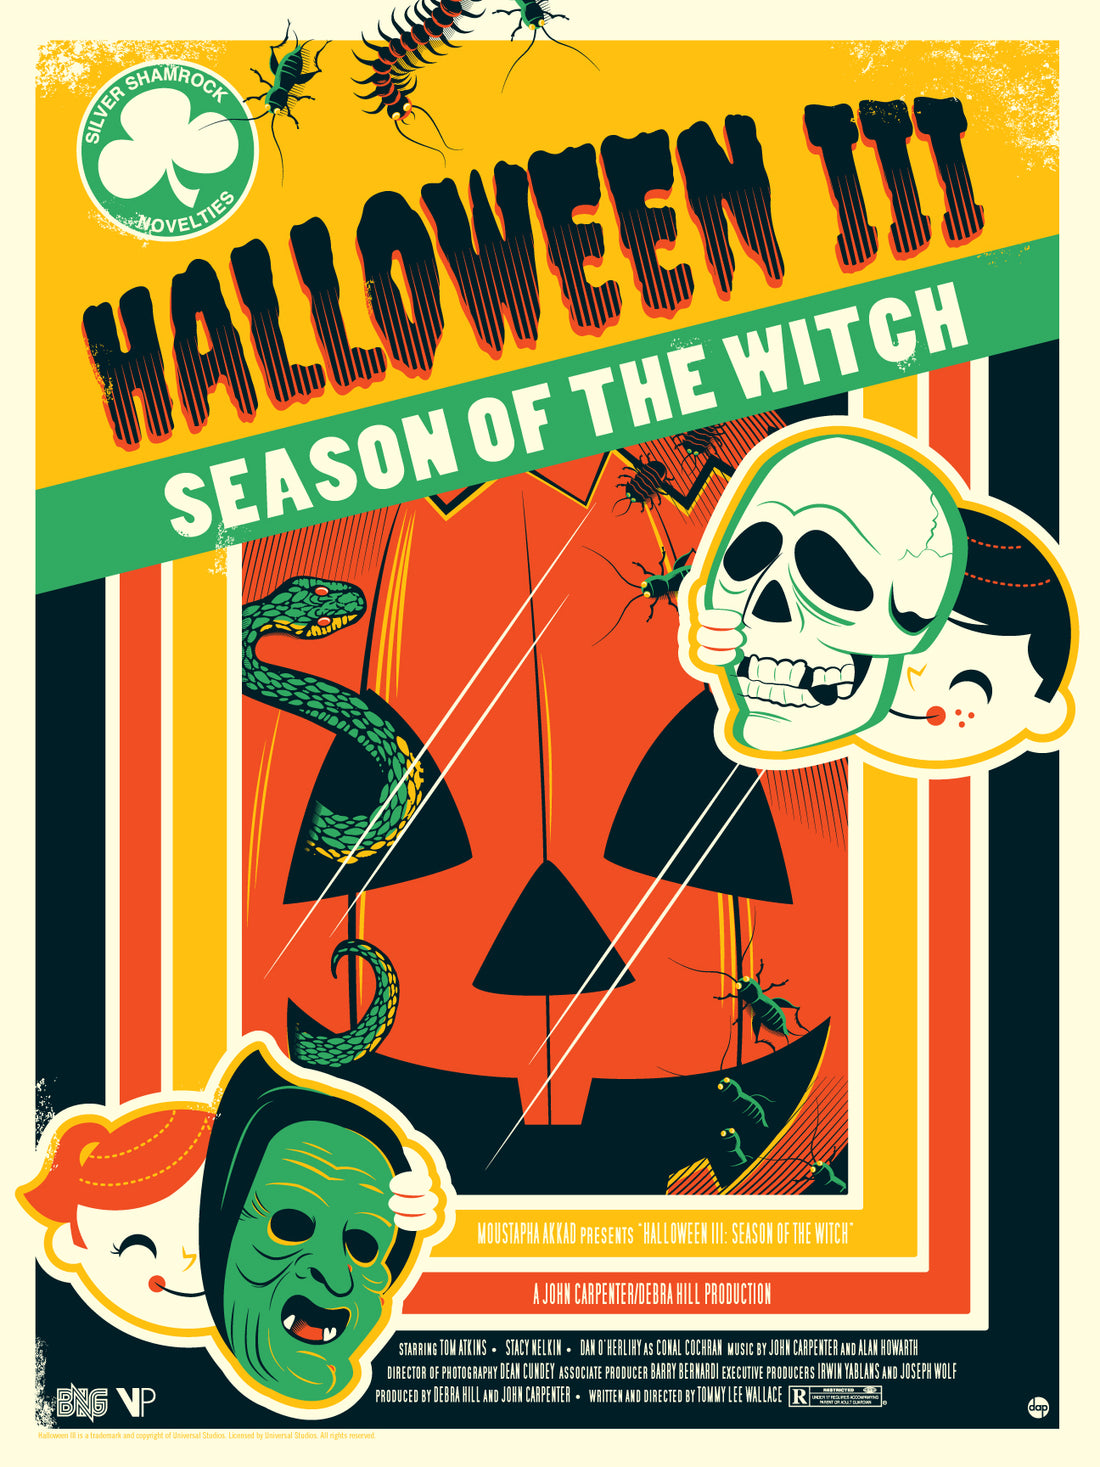 Halloween III: Season Of The Witch